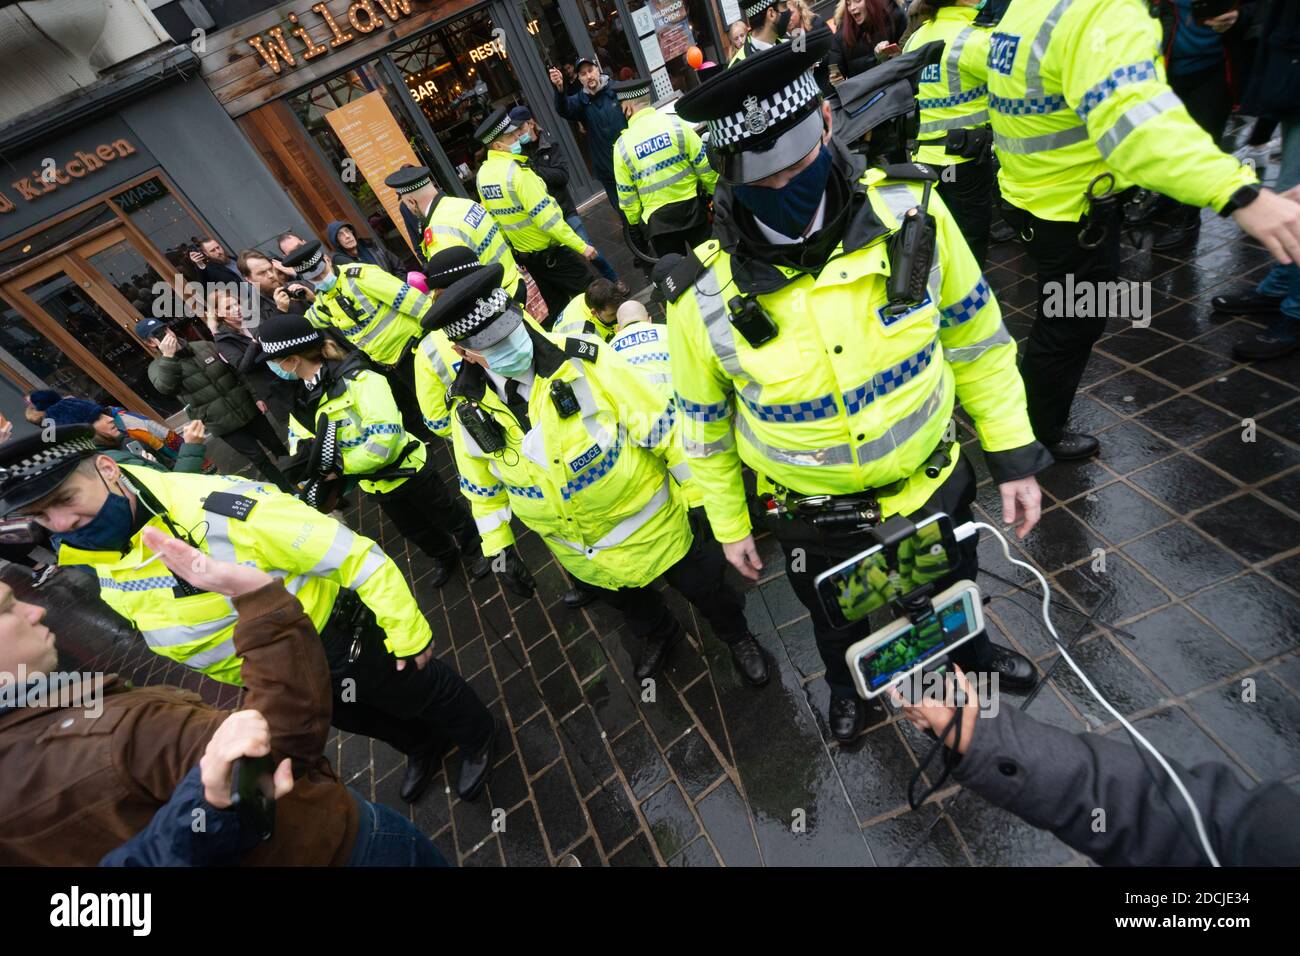 Centre-ville de Liverpool, 21 novembre 2020 : le manifestant est traîné au sol par la police à mesure que les tensions augmentent lors d'une marche anti-verrouillage. Banque D'Images